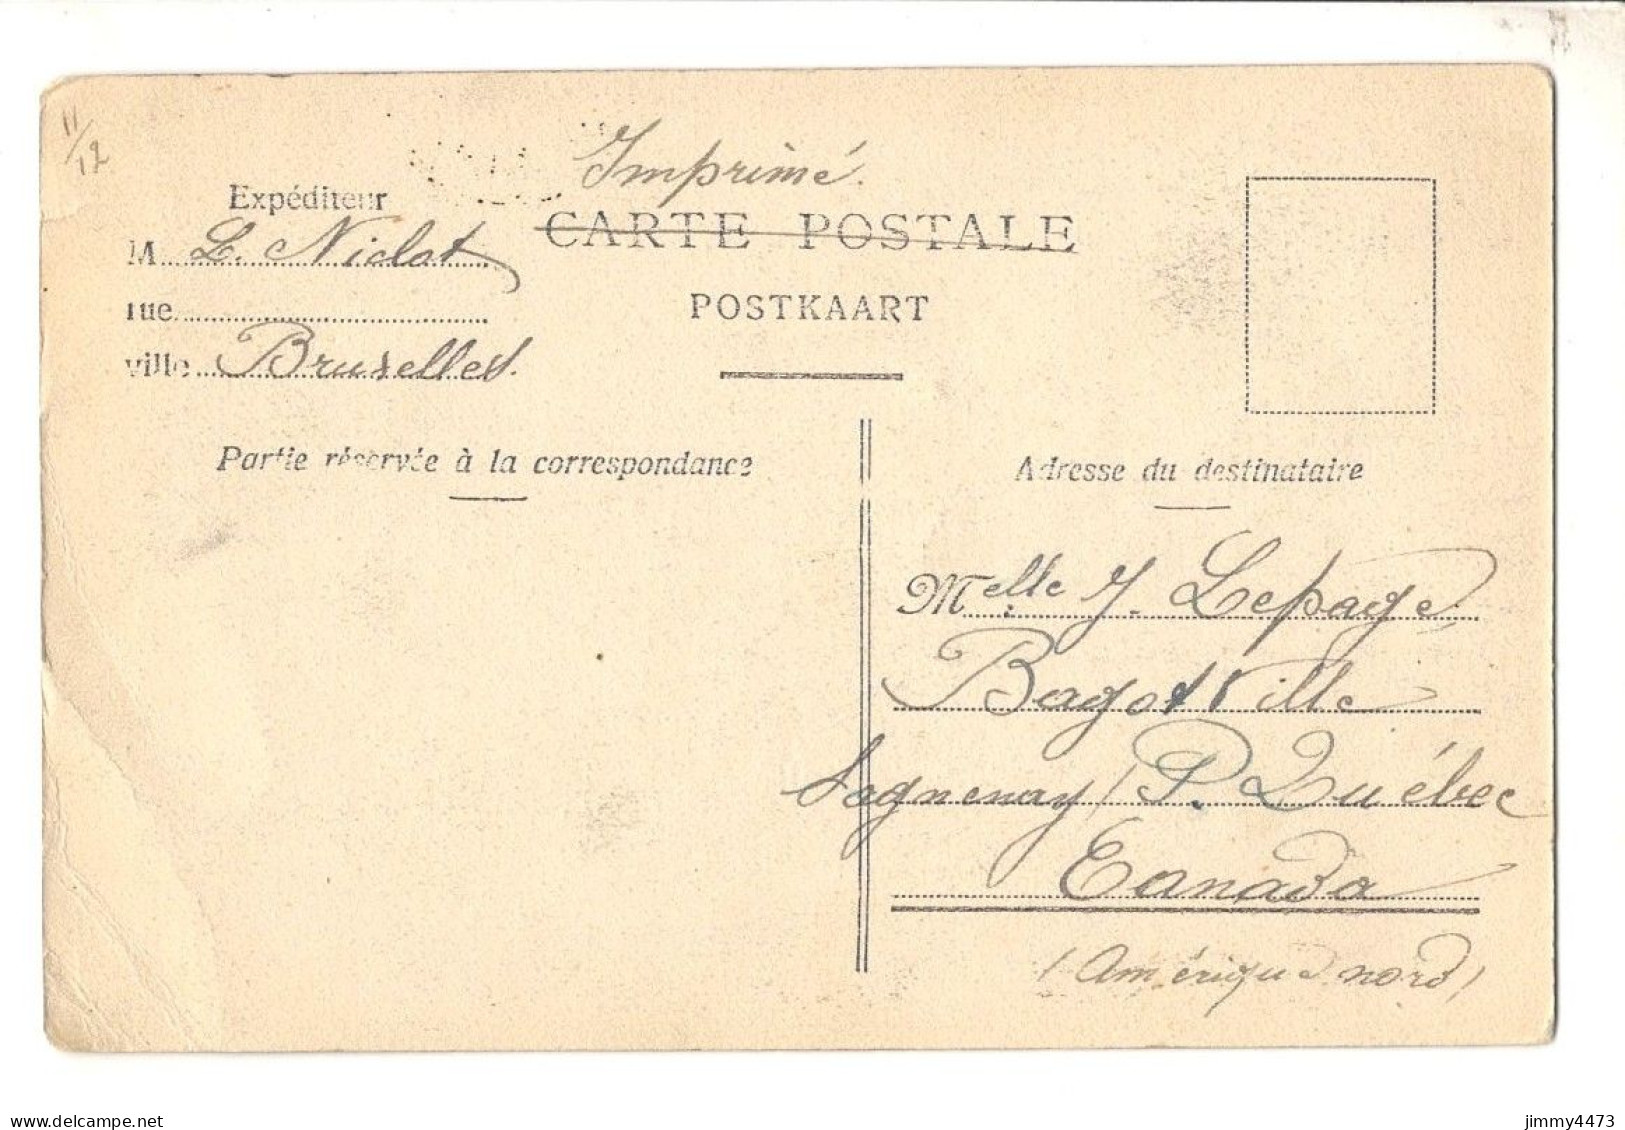 CPA - BRUXELLES En 1907 - Galerie St-Hubert ( Bien Animée ) N° 30 - - Märkte